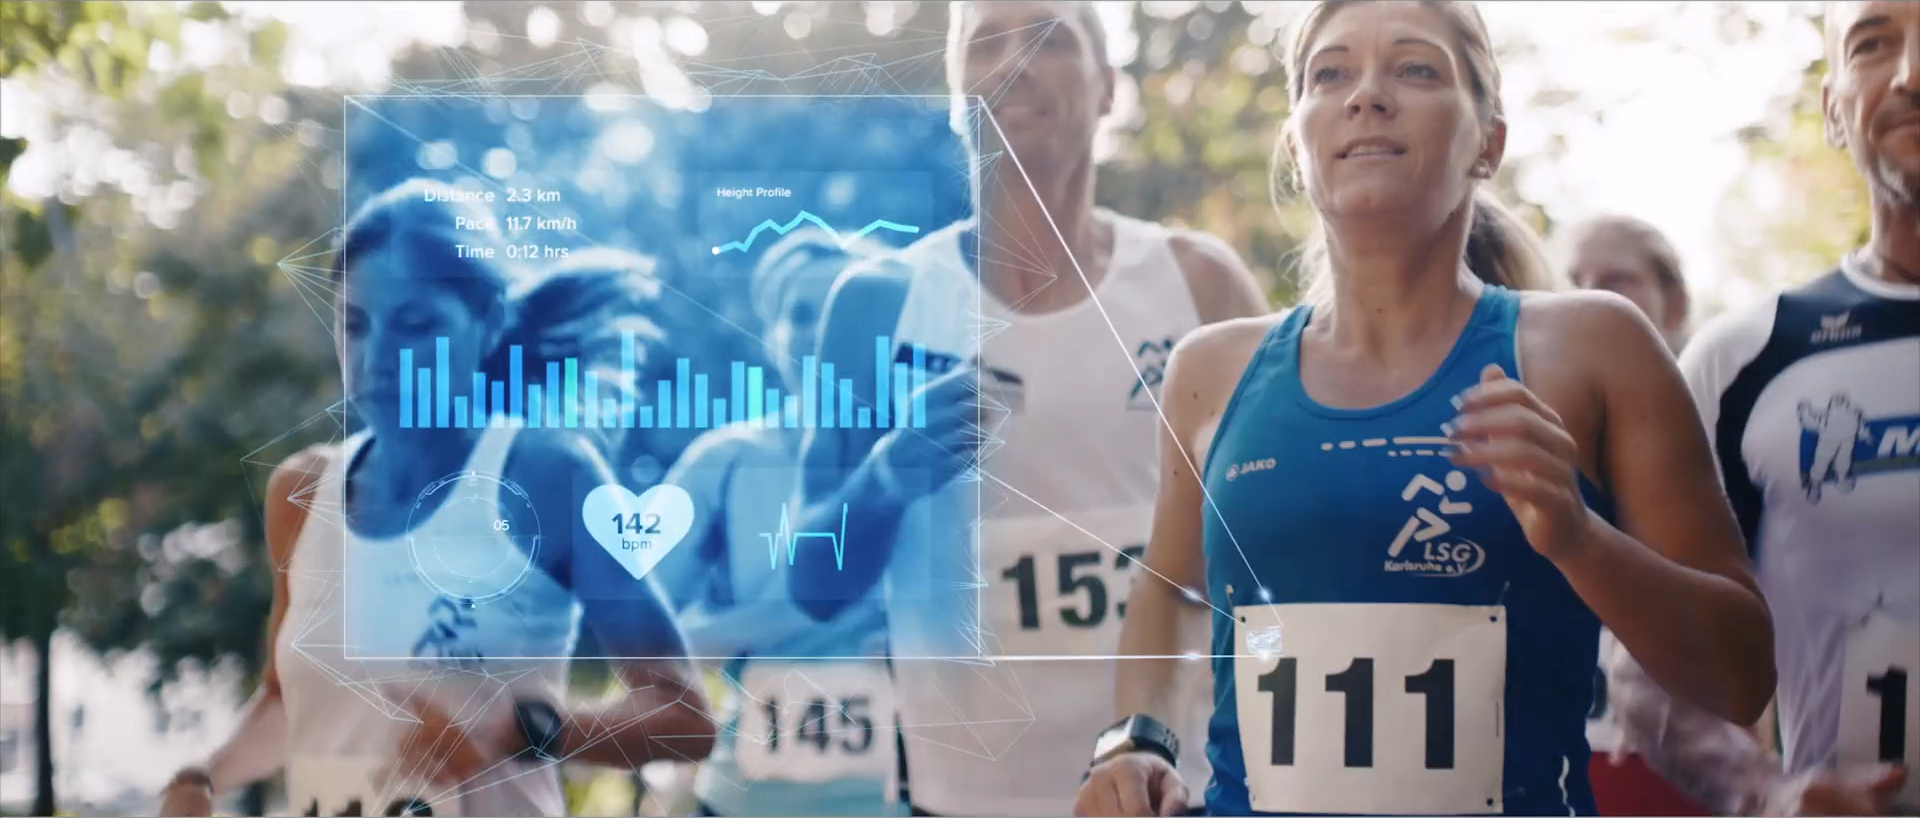 Viele Menschen bei einem Marathon, an der vordersten Frau schweben Motion Graphics mit Infos über die Strecke in Blau